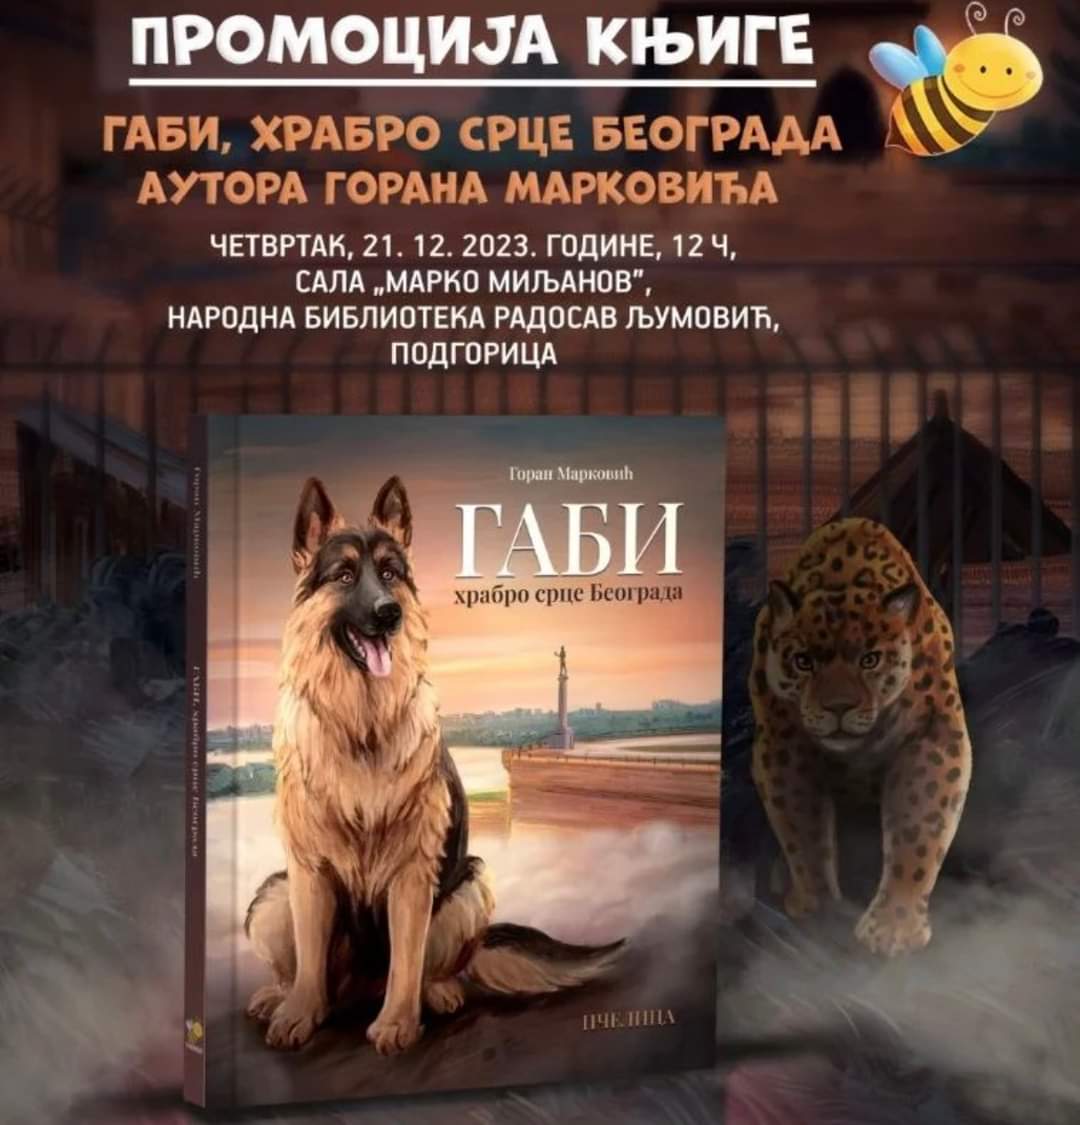 Promocija knjige “Gabi"